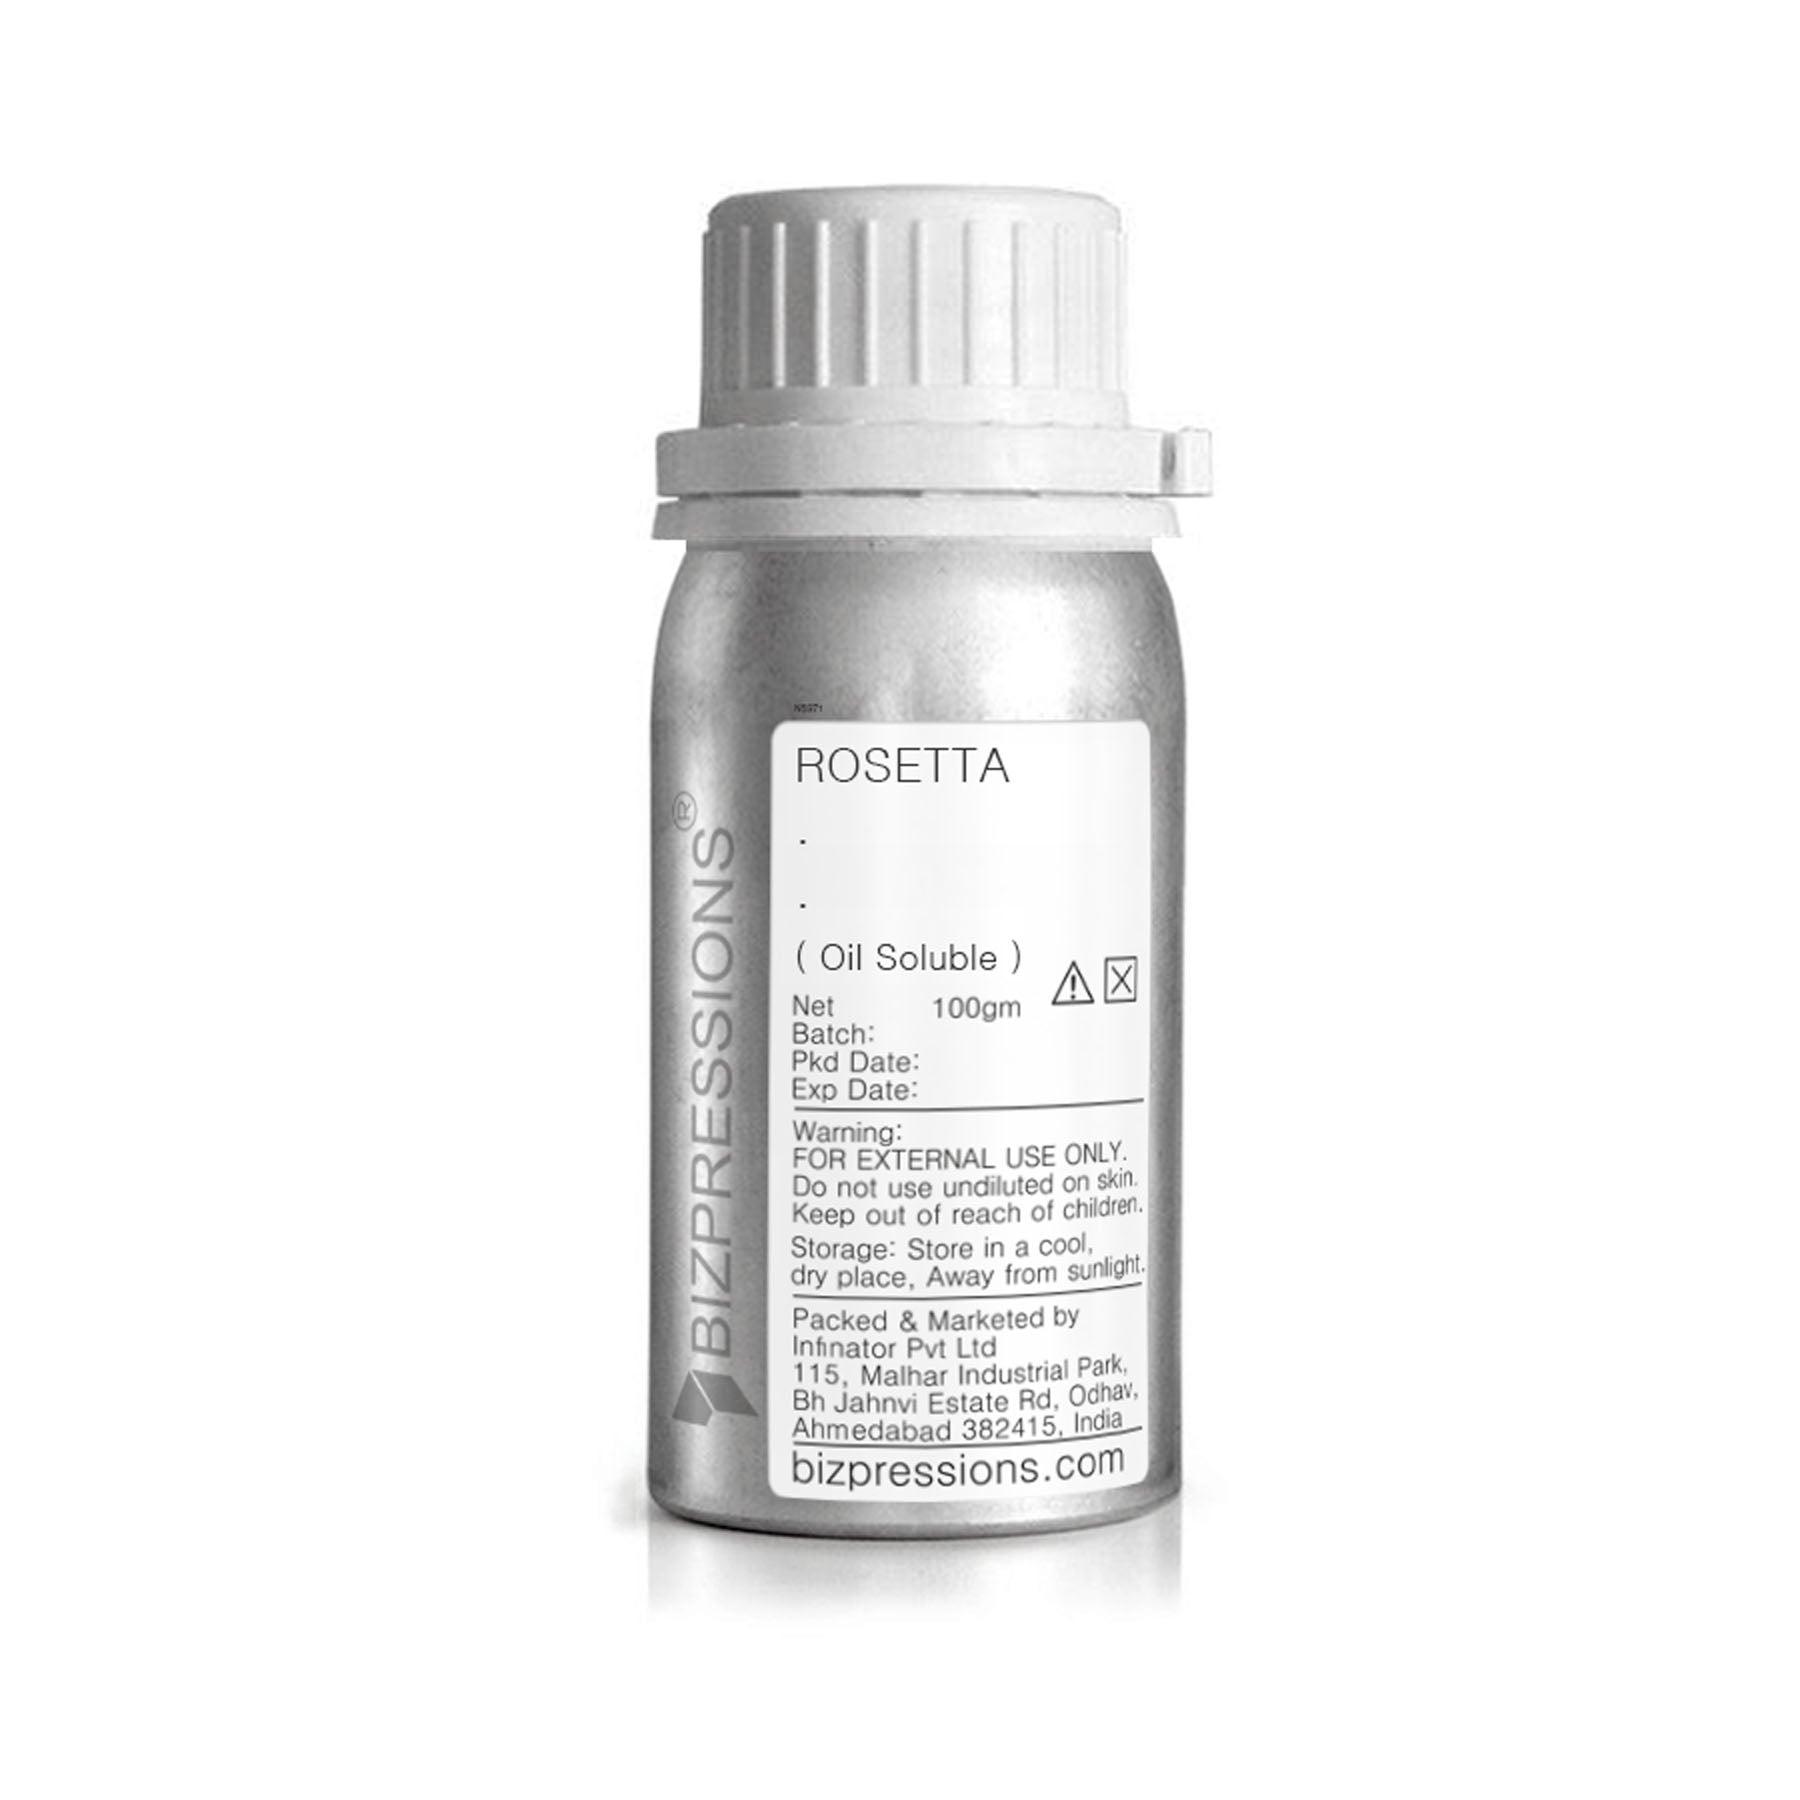 ROSETTA - Fragrance ( Oil Soluble ) - 100 gm